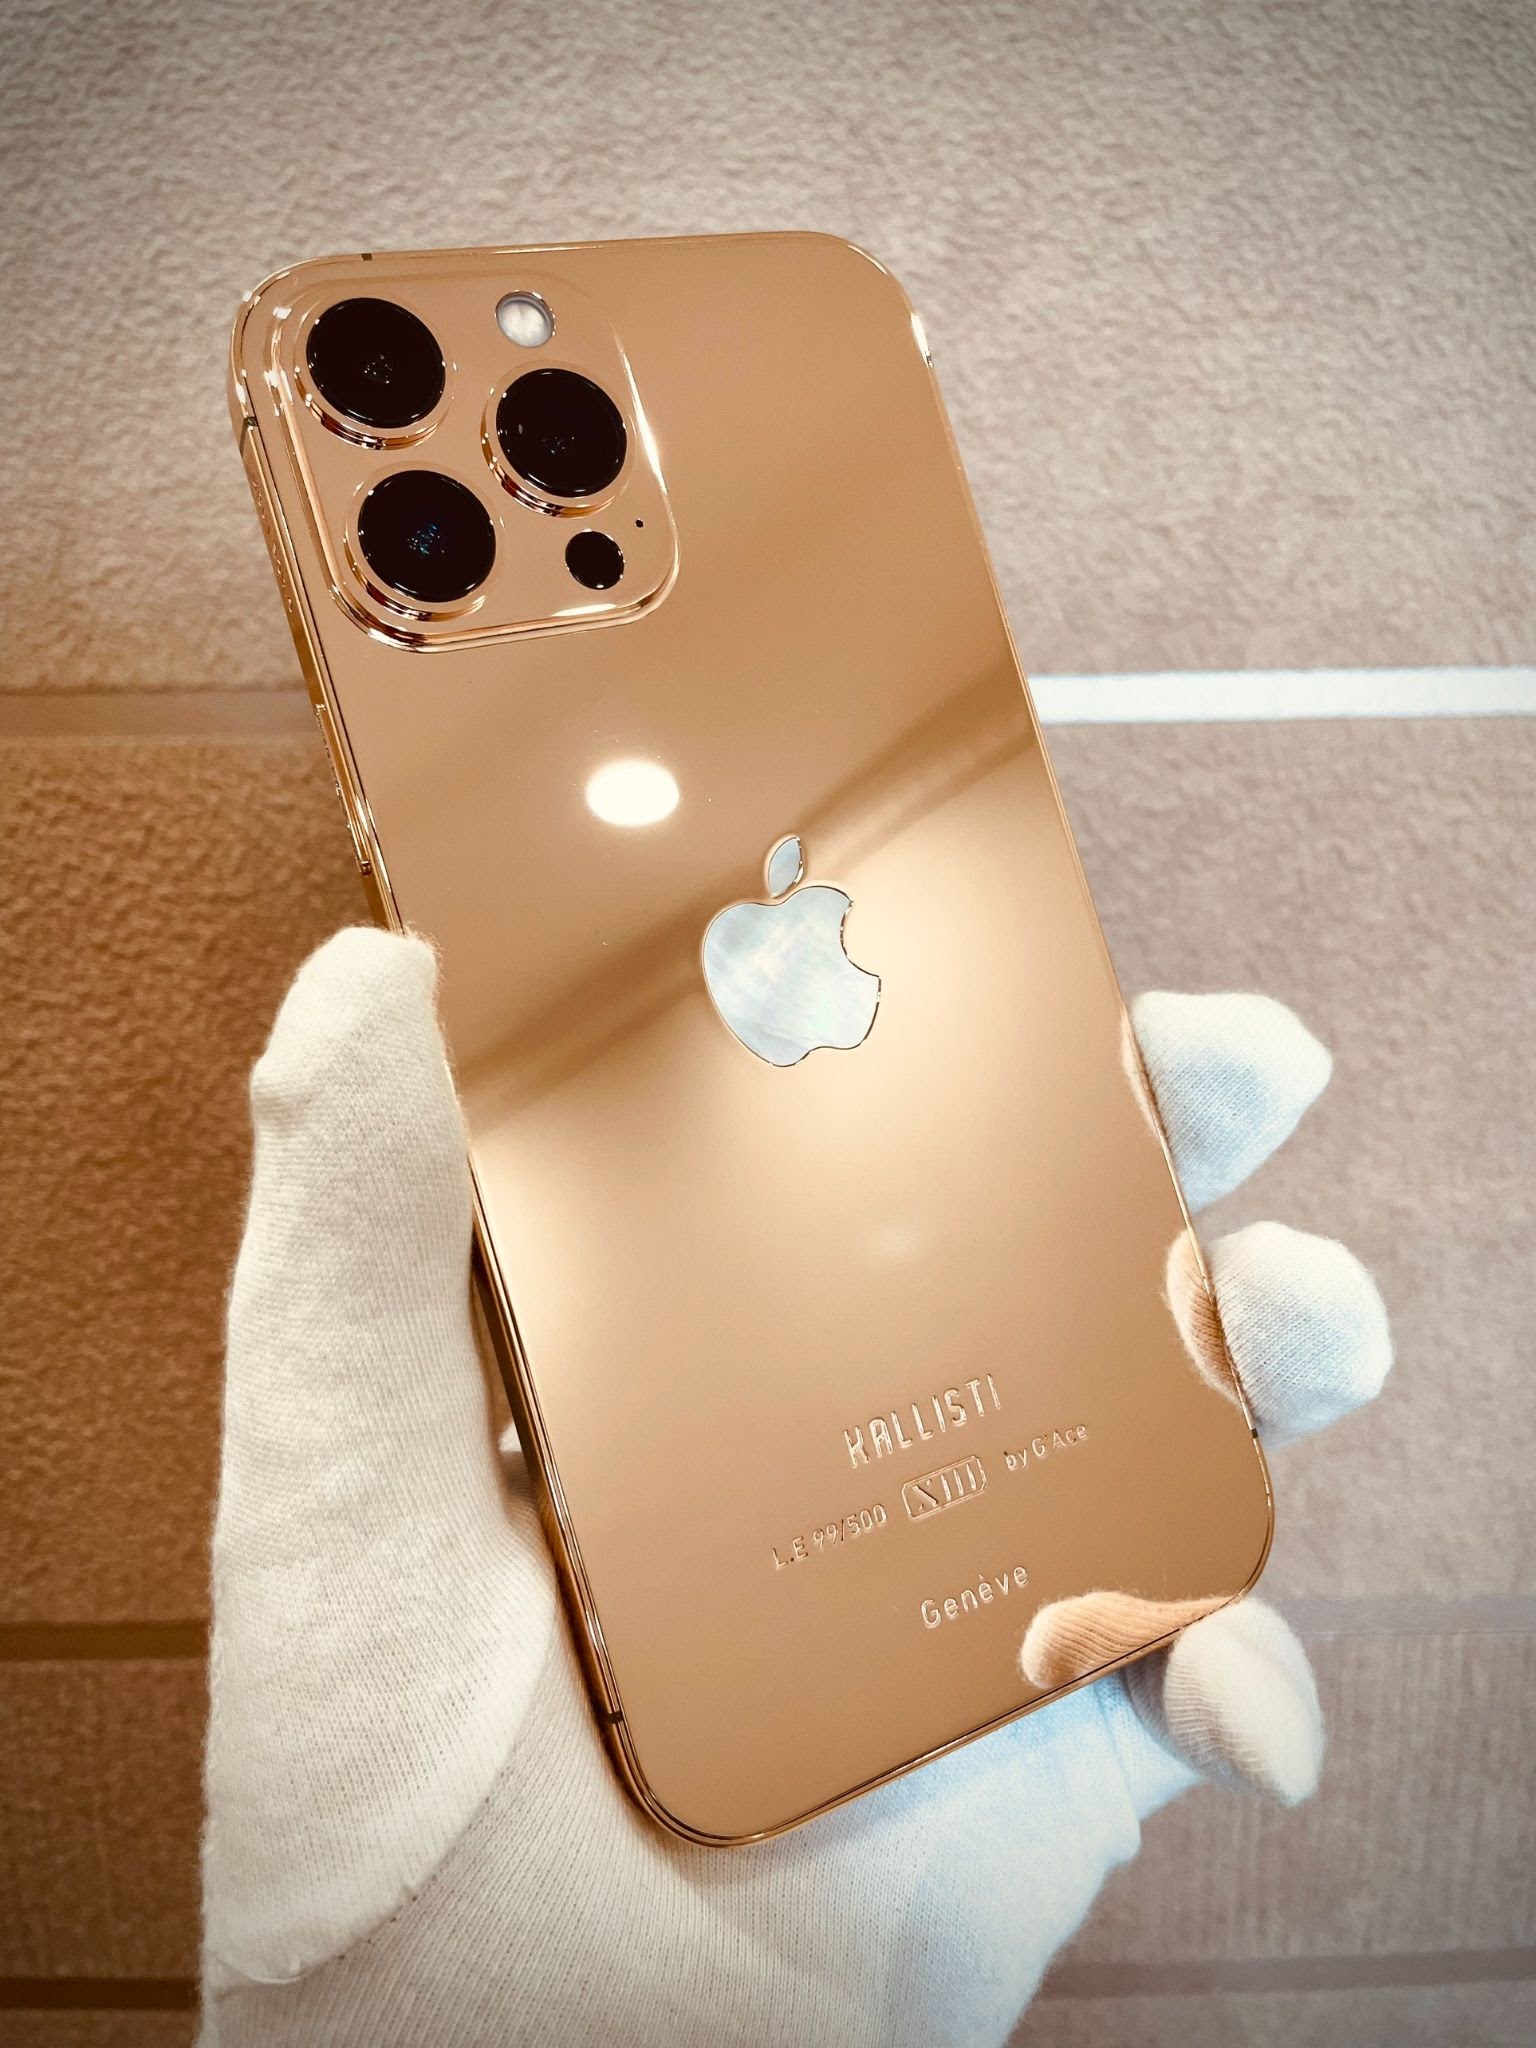 Bạn muốn chiêm ngưỡng thiết kế độc đáo của iPhone 13 Pro Max mạ vàng và kim cương? Hãy xem ngay hình ảnh liên quan và khám phá vẻ đẹp lộng lẫy của sản phẩm này.